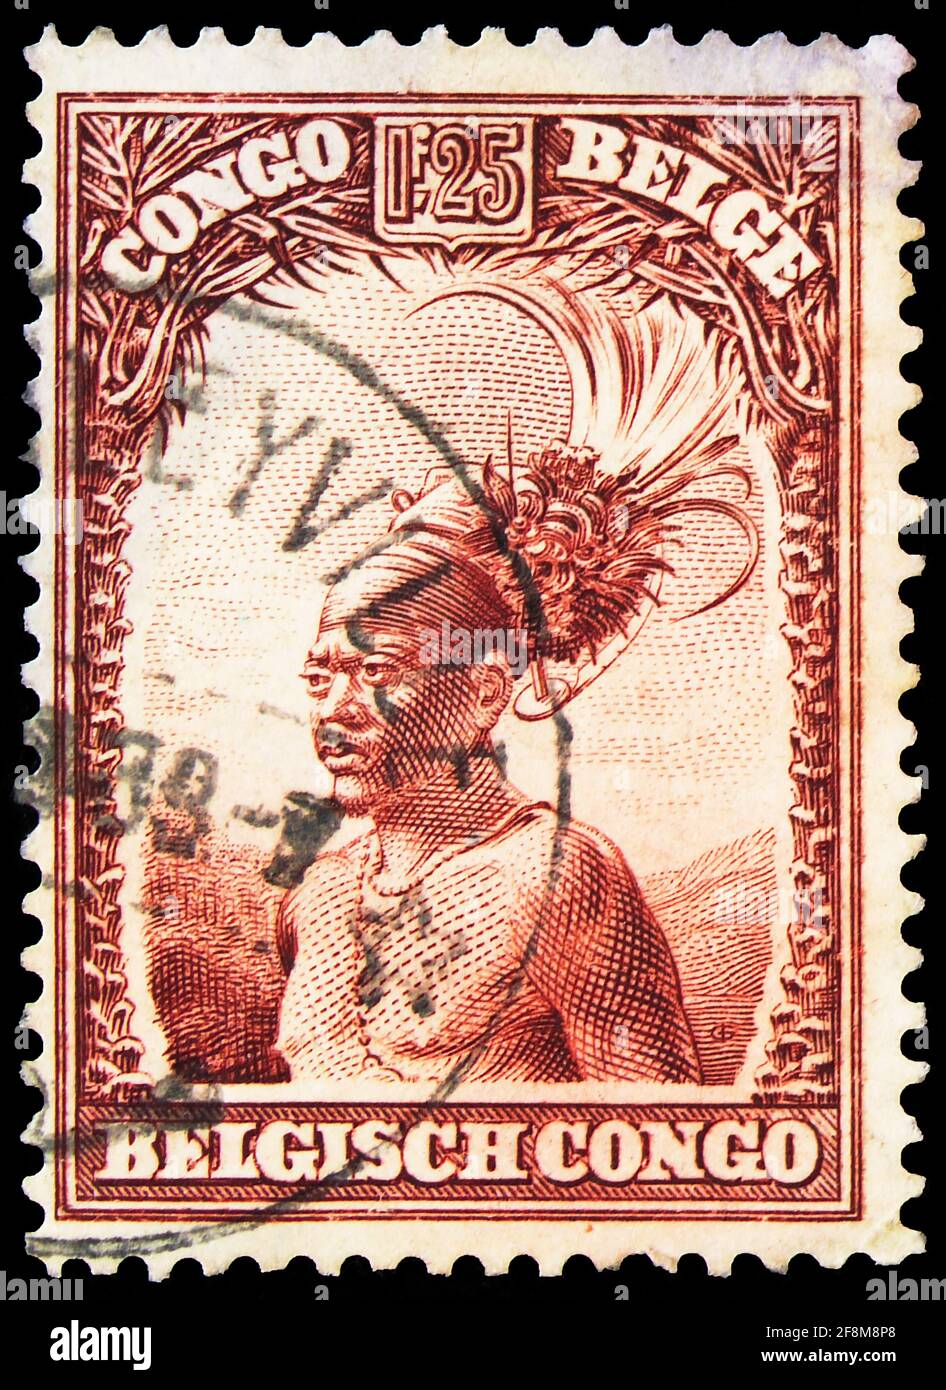 MOSKAU, RUSSLAND - 4. OKTOBER 2019: Die im belgischen Kongo gedruckte Briefmarke zeigt Mangbetu Chief, Völker und Ansichten aus der Kongo-Serie, um 1931 Stockfoto